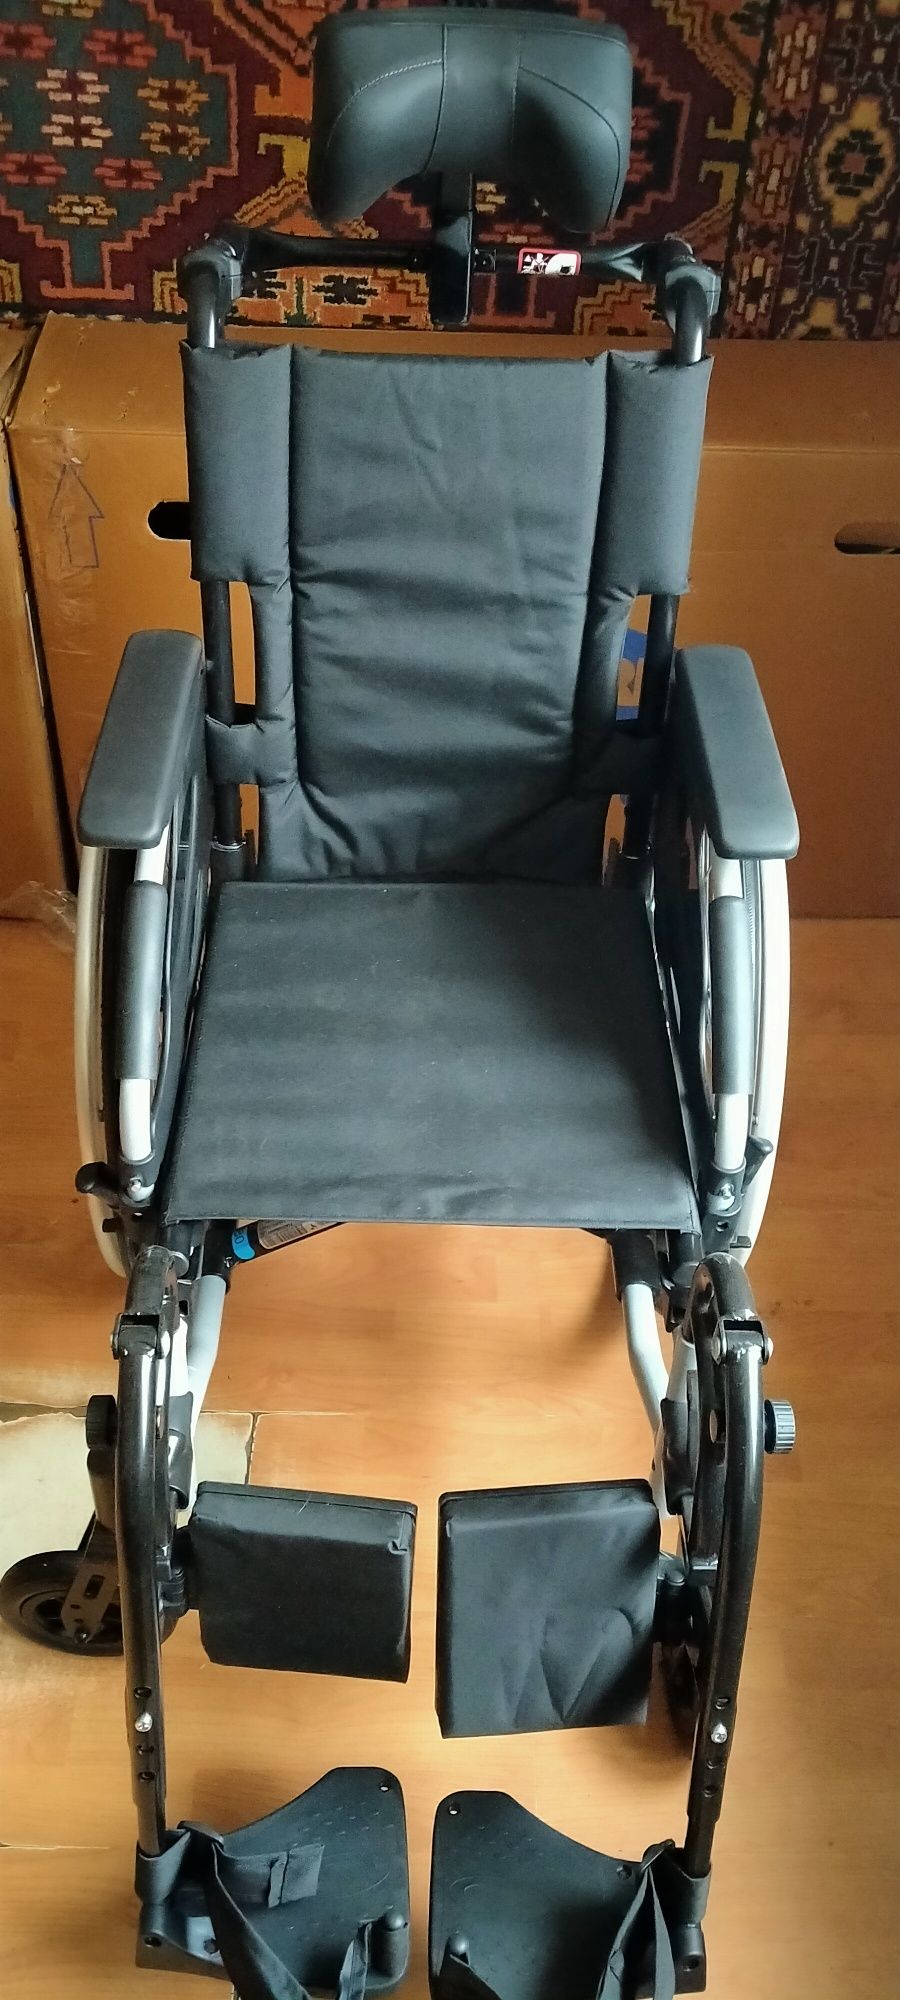 Новая, многофункциональная инвалидная коляска ширина 38 см.